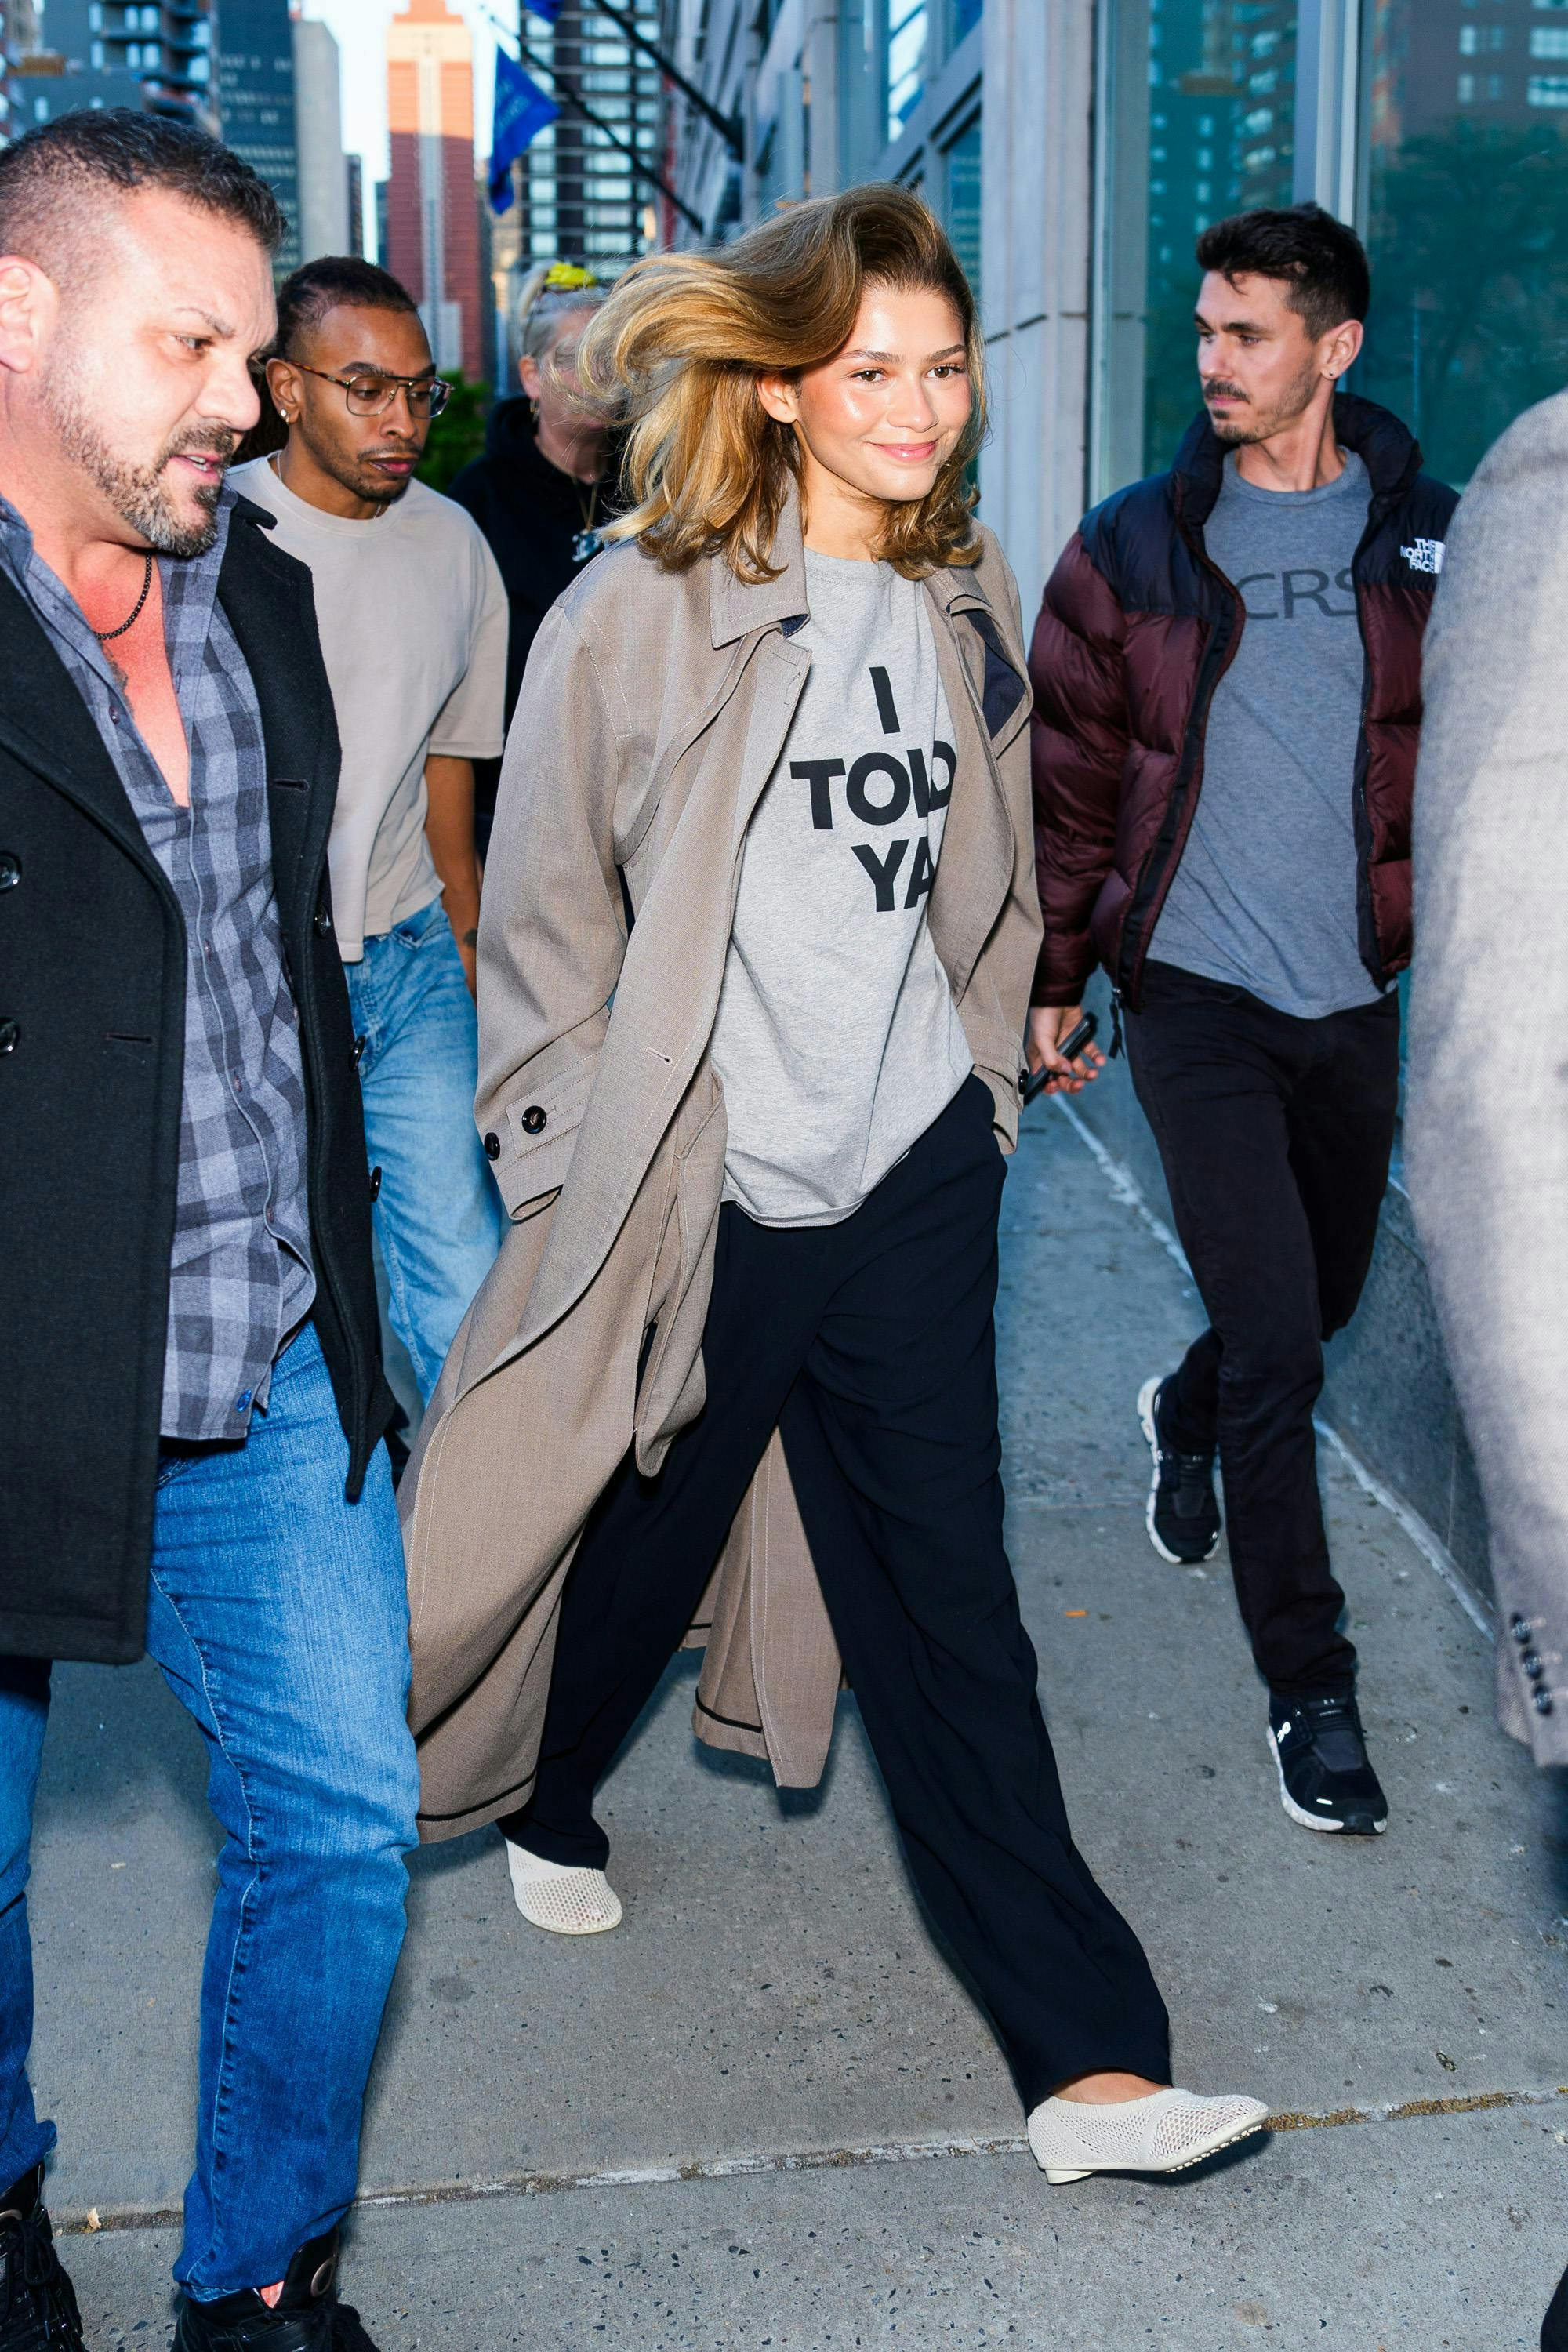 Zendaya con indosso la t-shirt "I Told Ya" di Loewe (Getty Images)